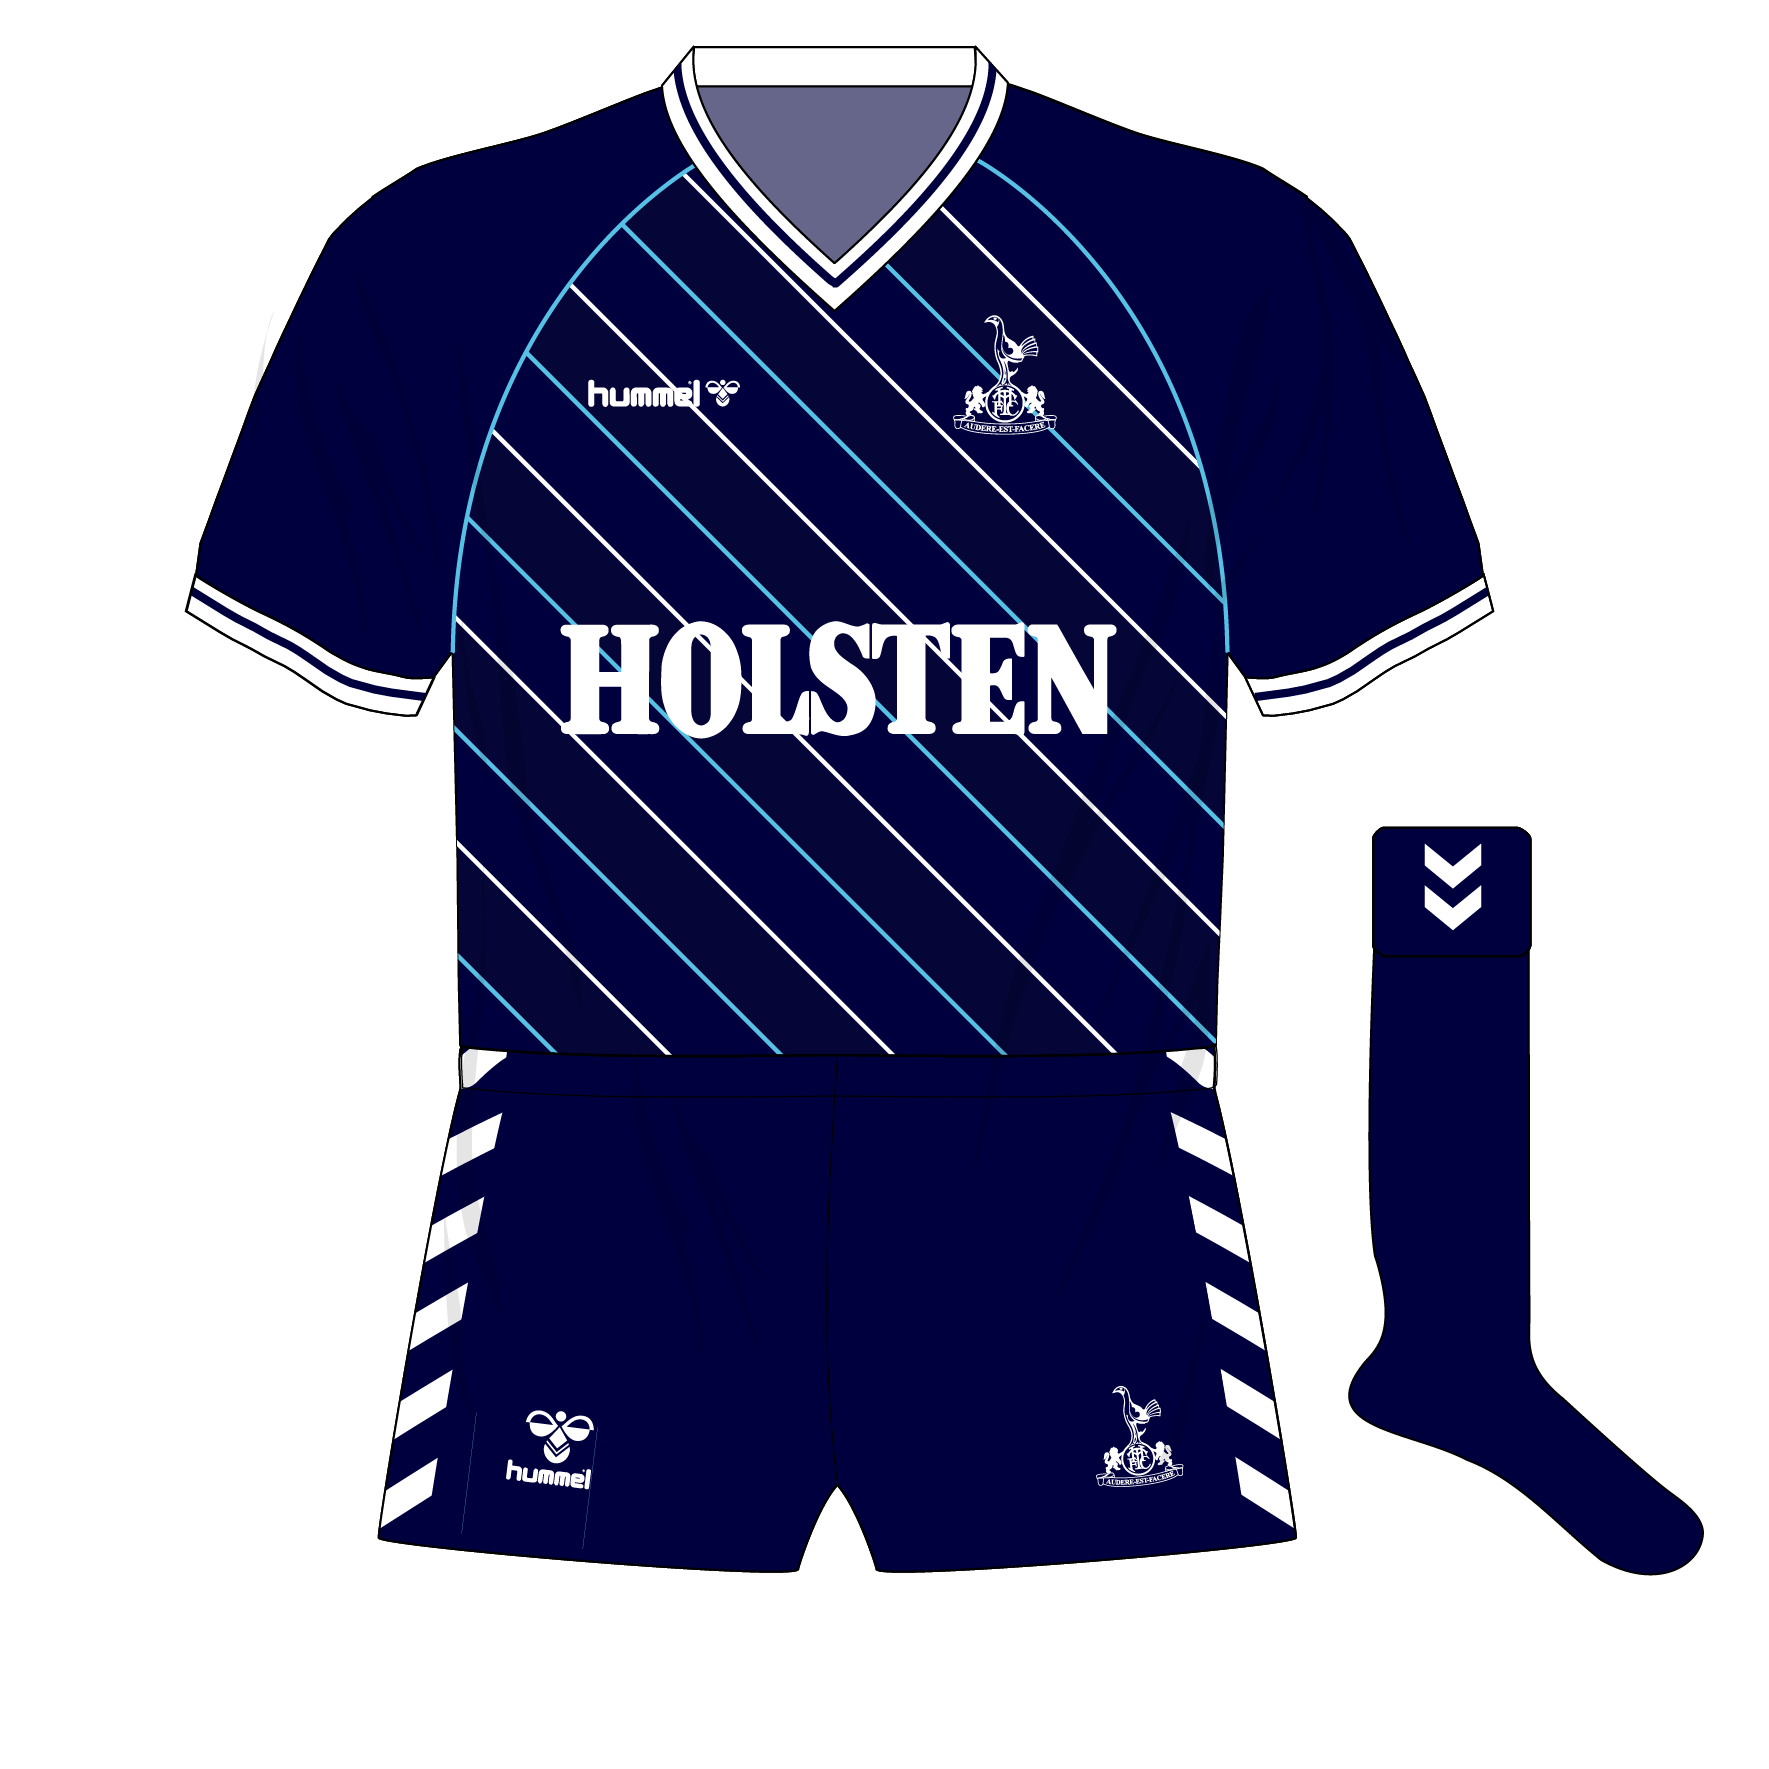 Tottenham Hotspur Away football shirt 1983 - 1985. Sponsored by